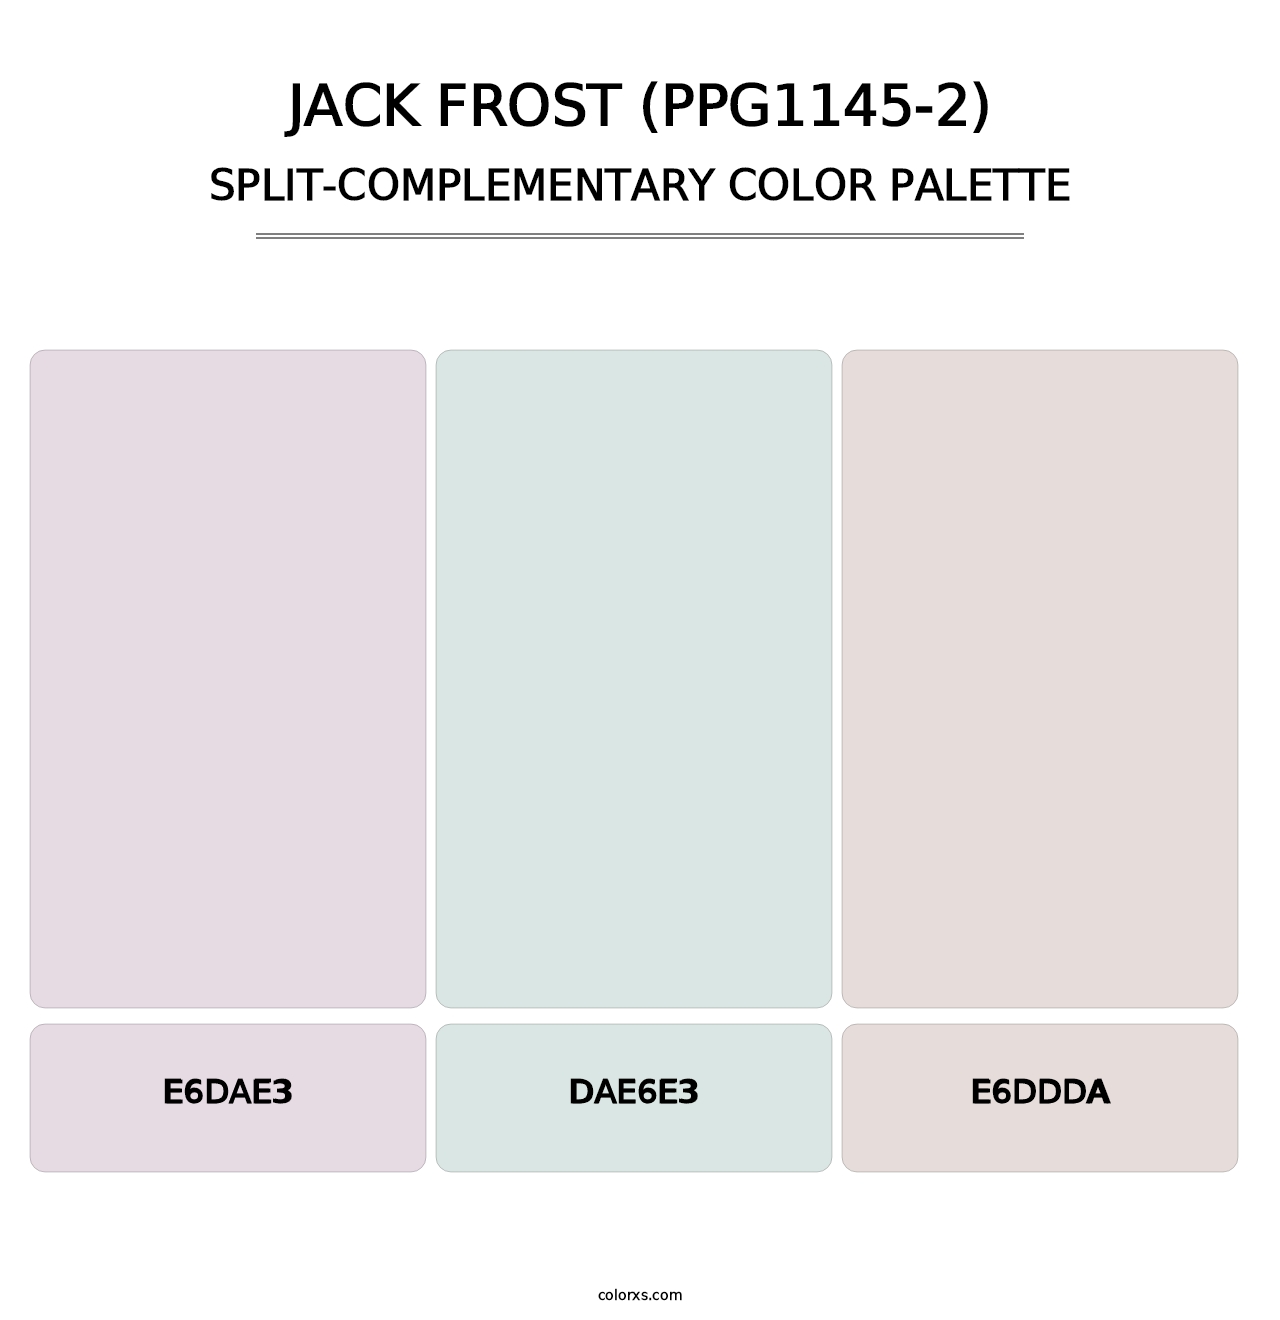 Jack Frost (PPG1145-2) - Split-Complementary Color Palette